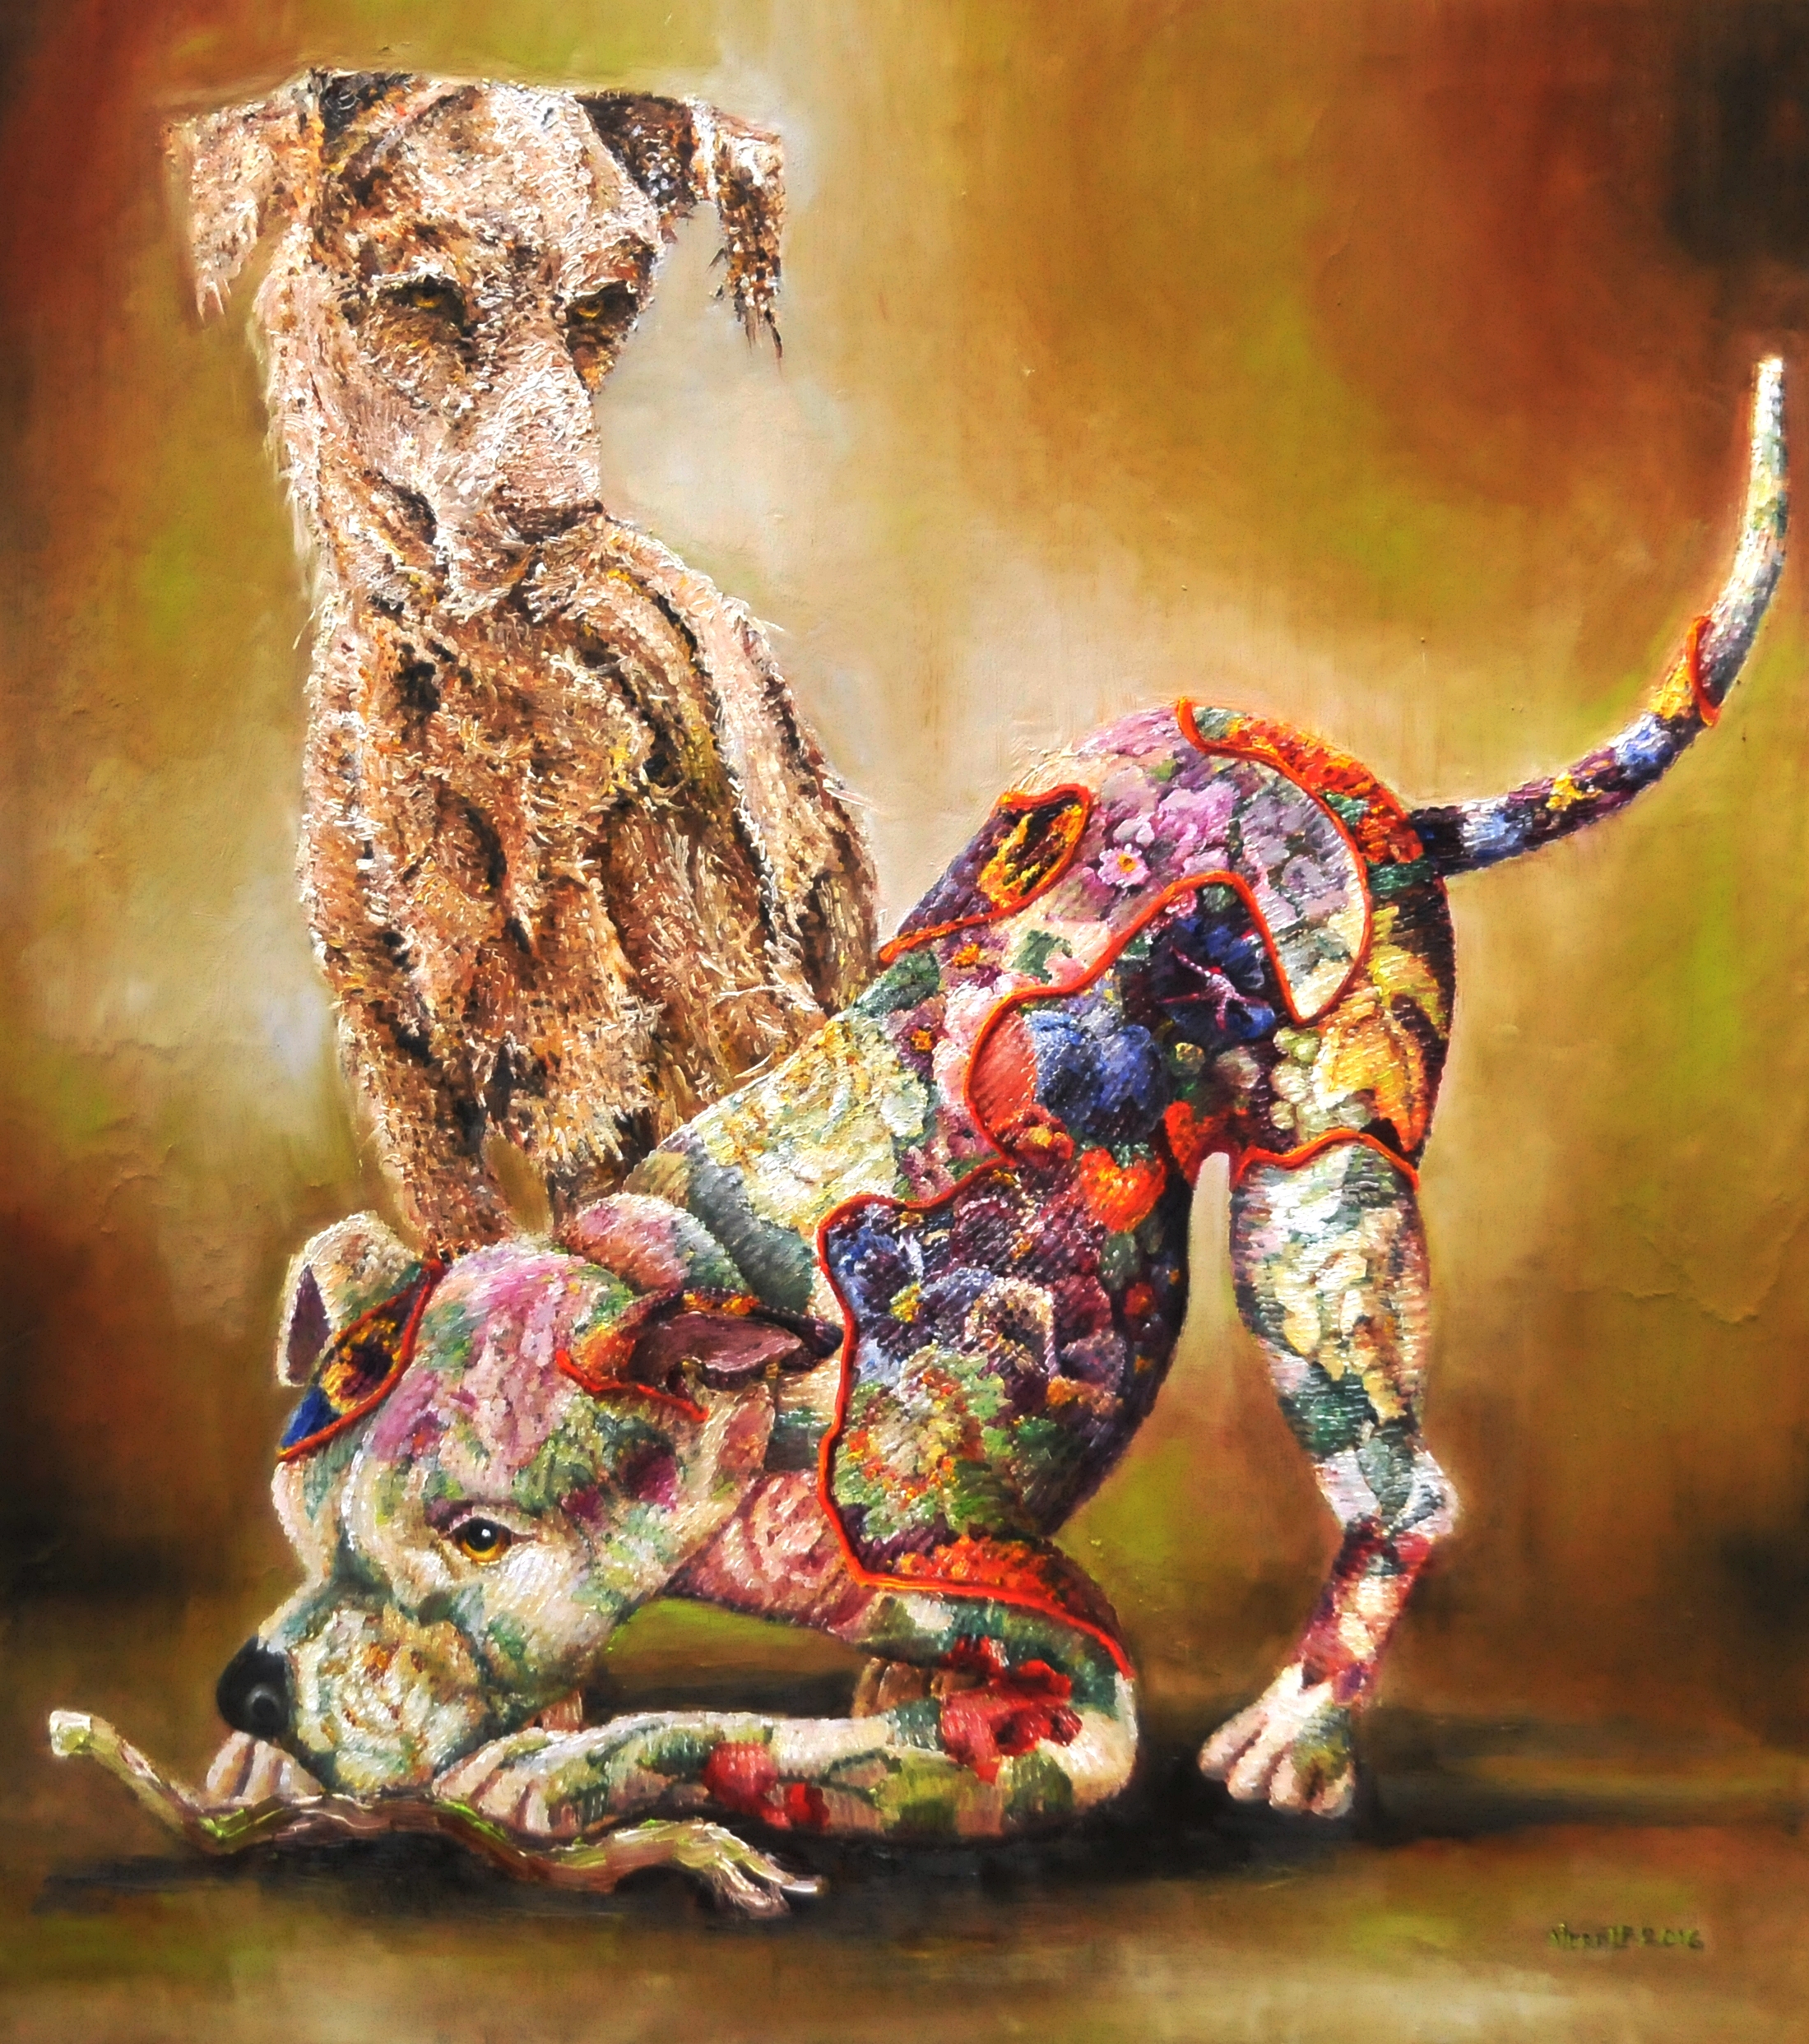 Textielsculpturen van twee honden | Olieverf op linnen | Jaar: 2016 | Afmetingen: 90x80cm